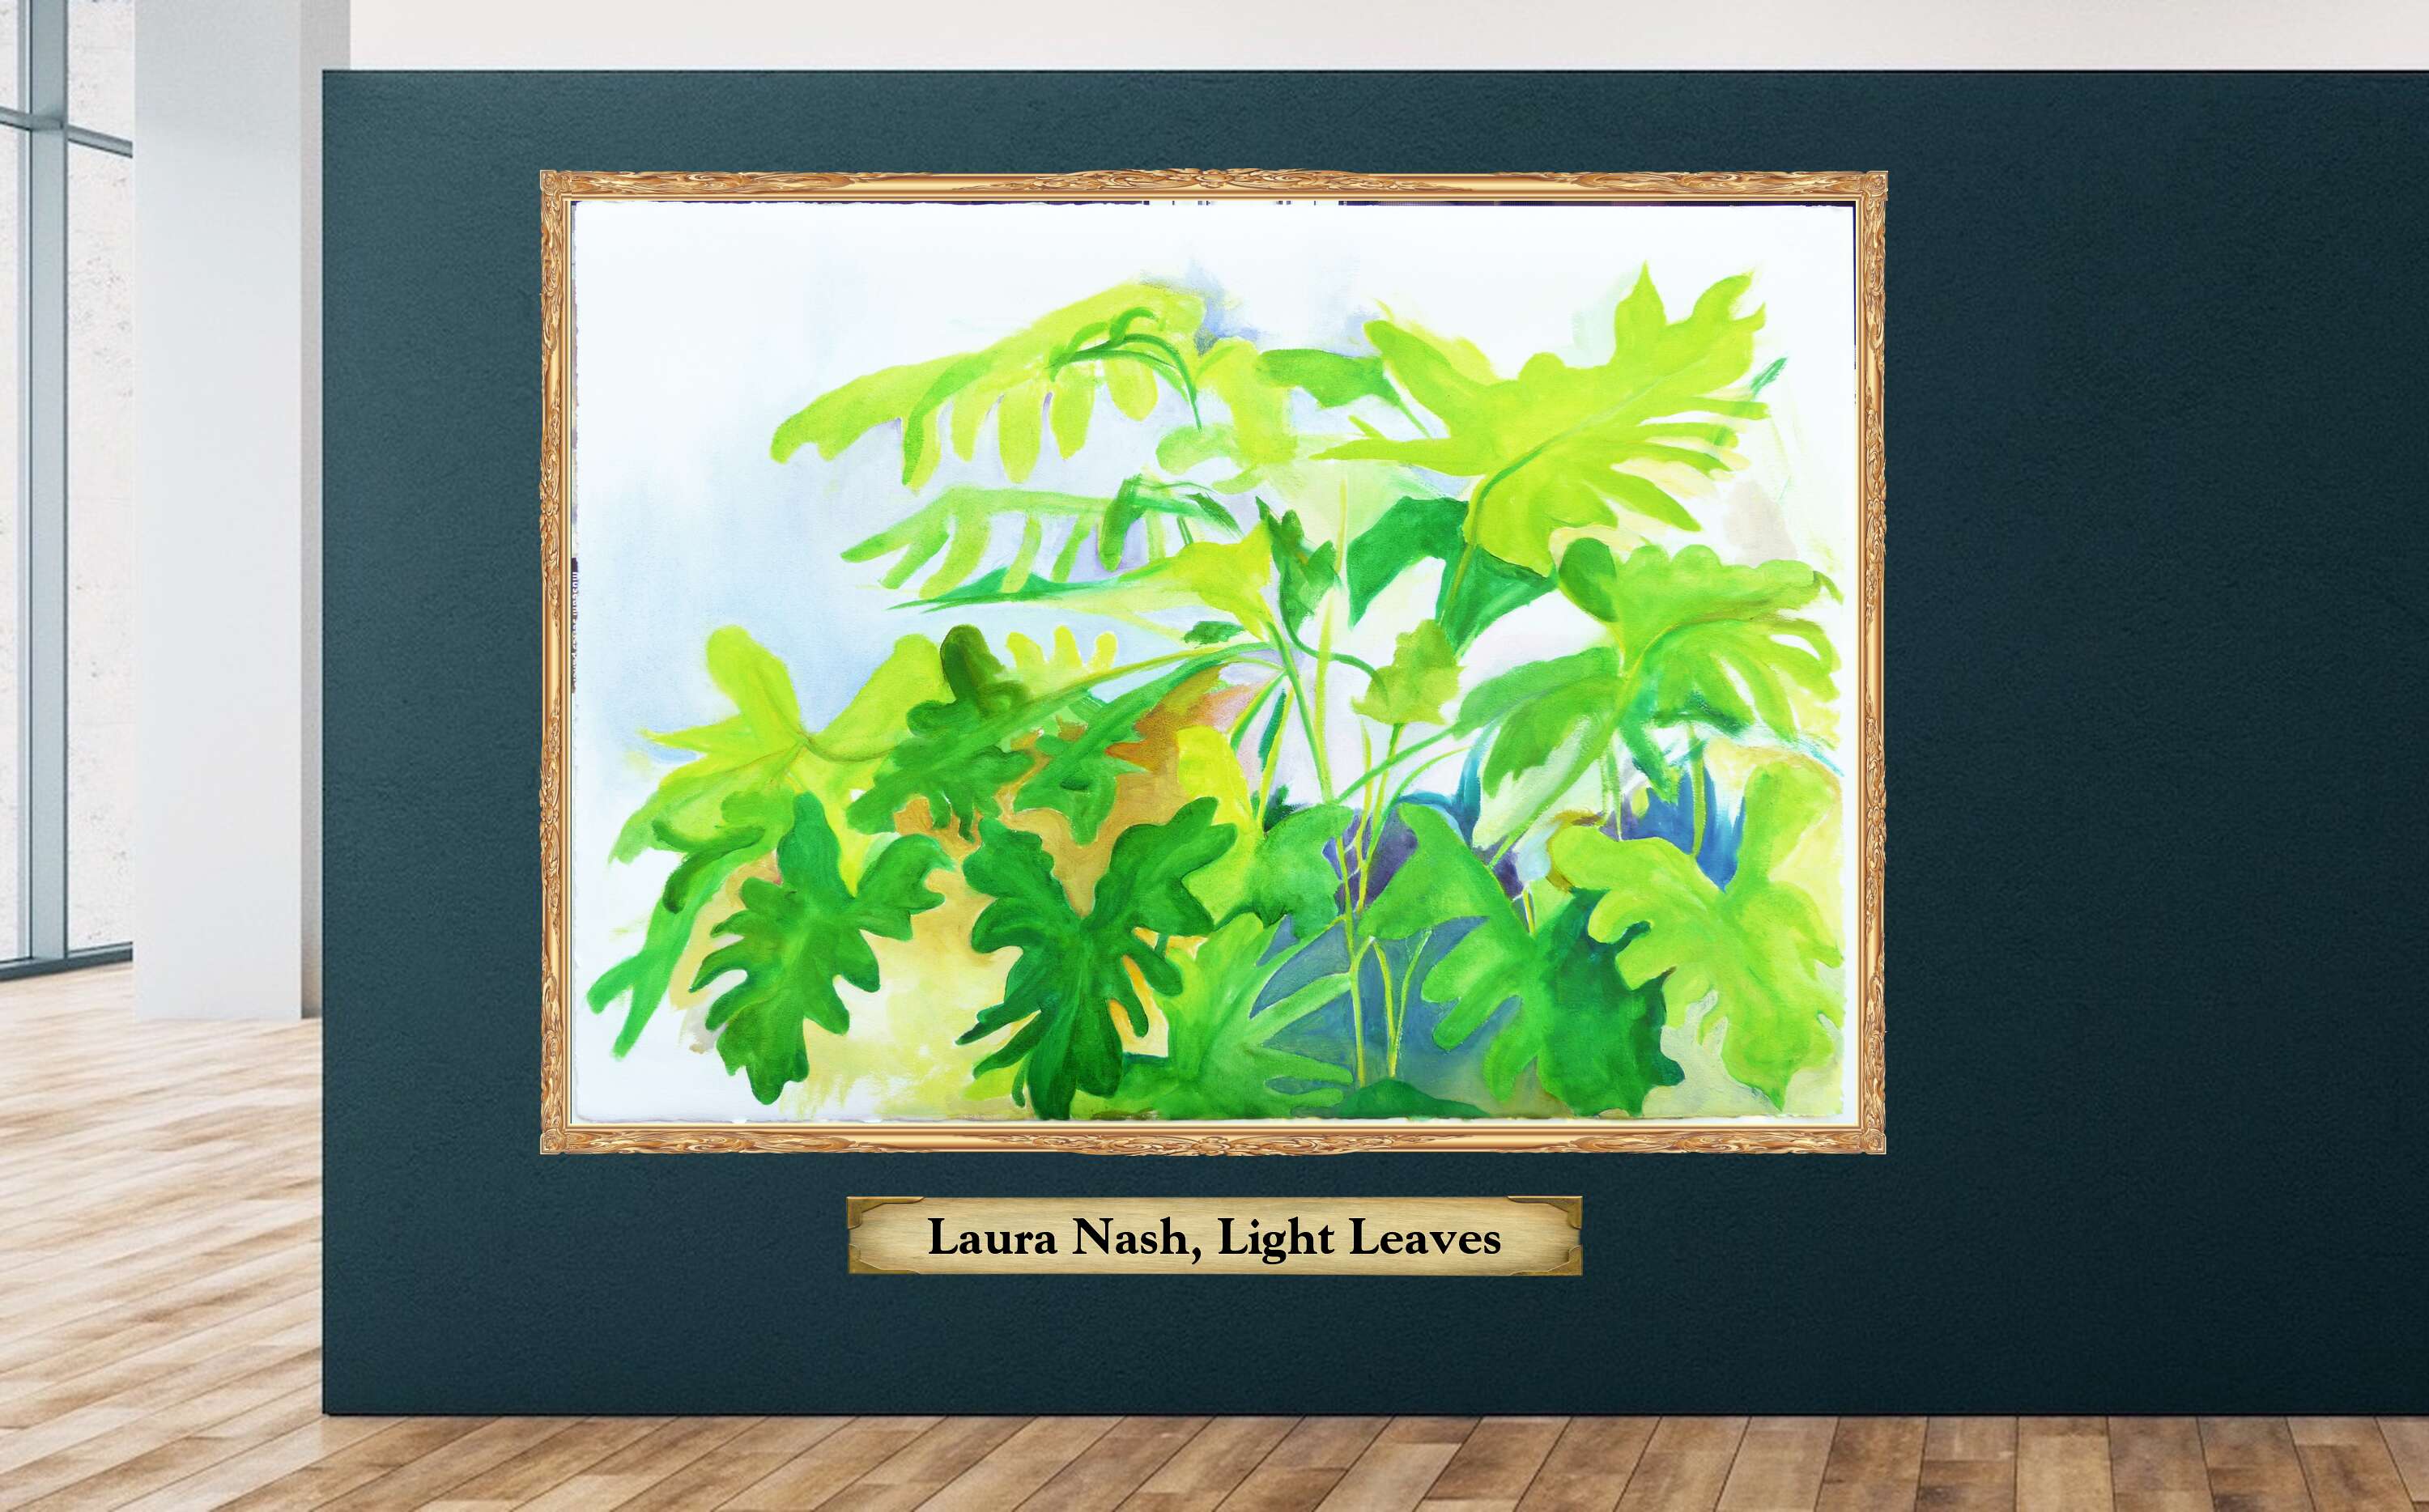 Laura Nash, Light Leaves